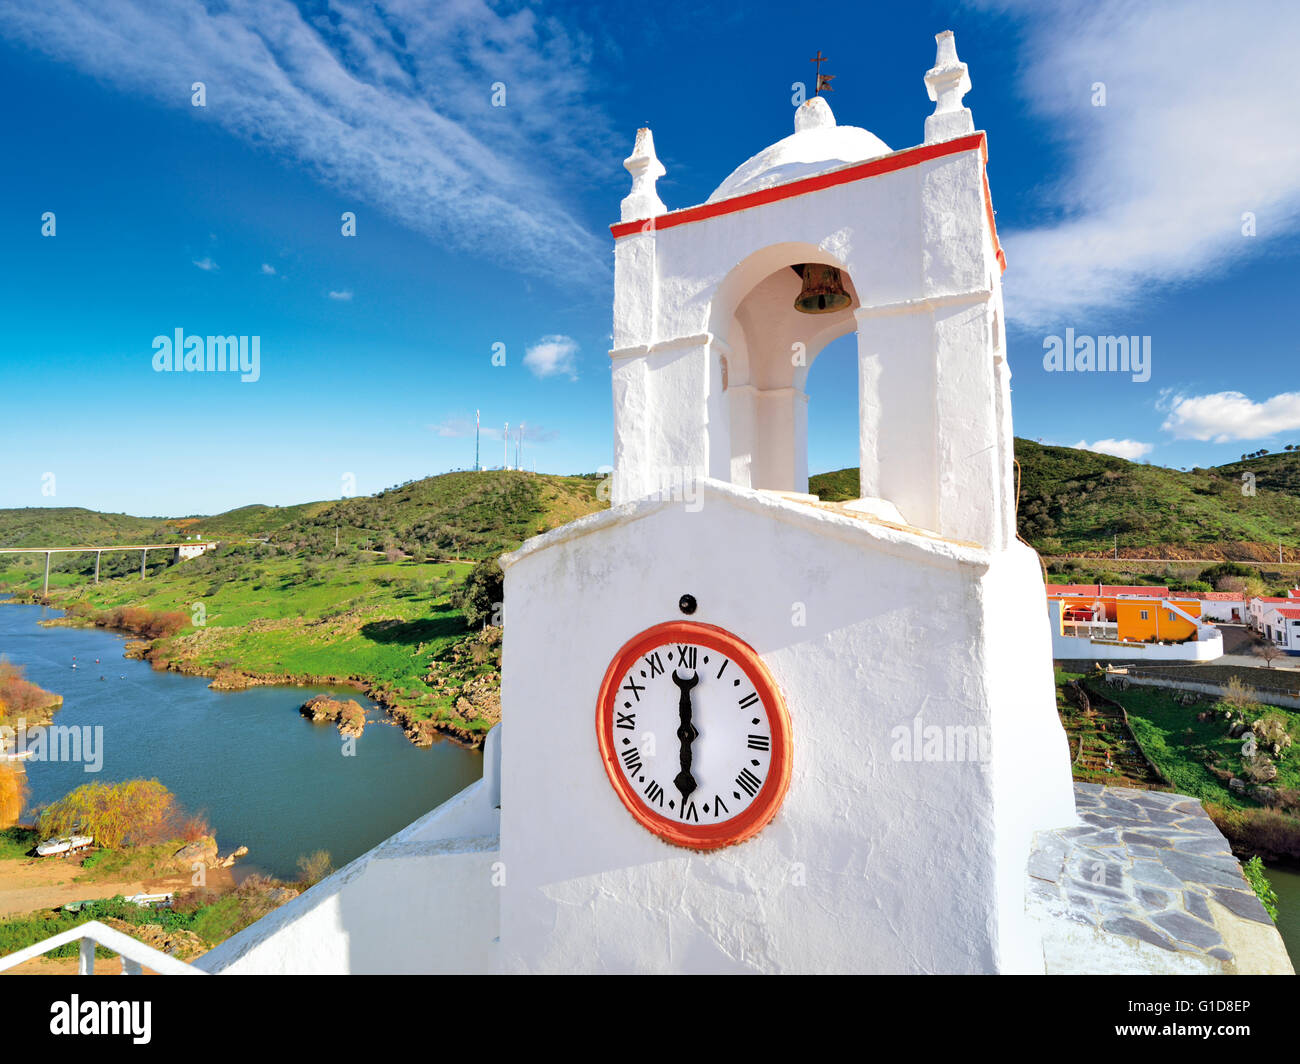 Portugal, Alentejo: Mittelalterliche Uhrturm und Blick auf den Fluss Guadiana in Mértola Stockfoto